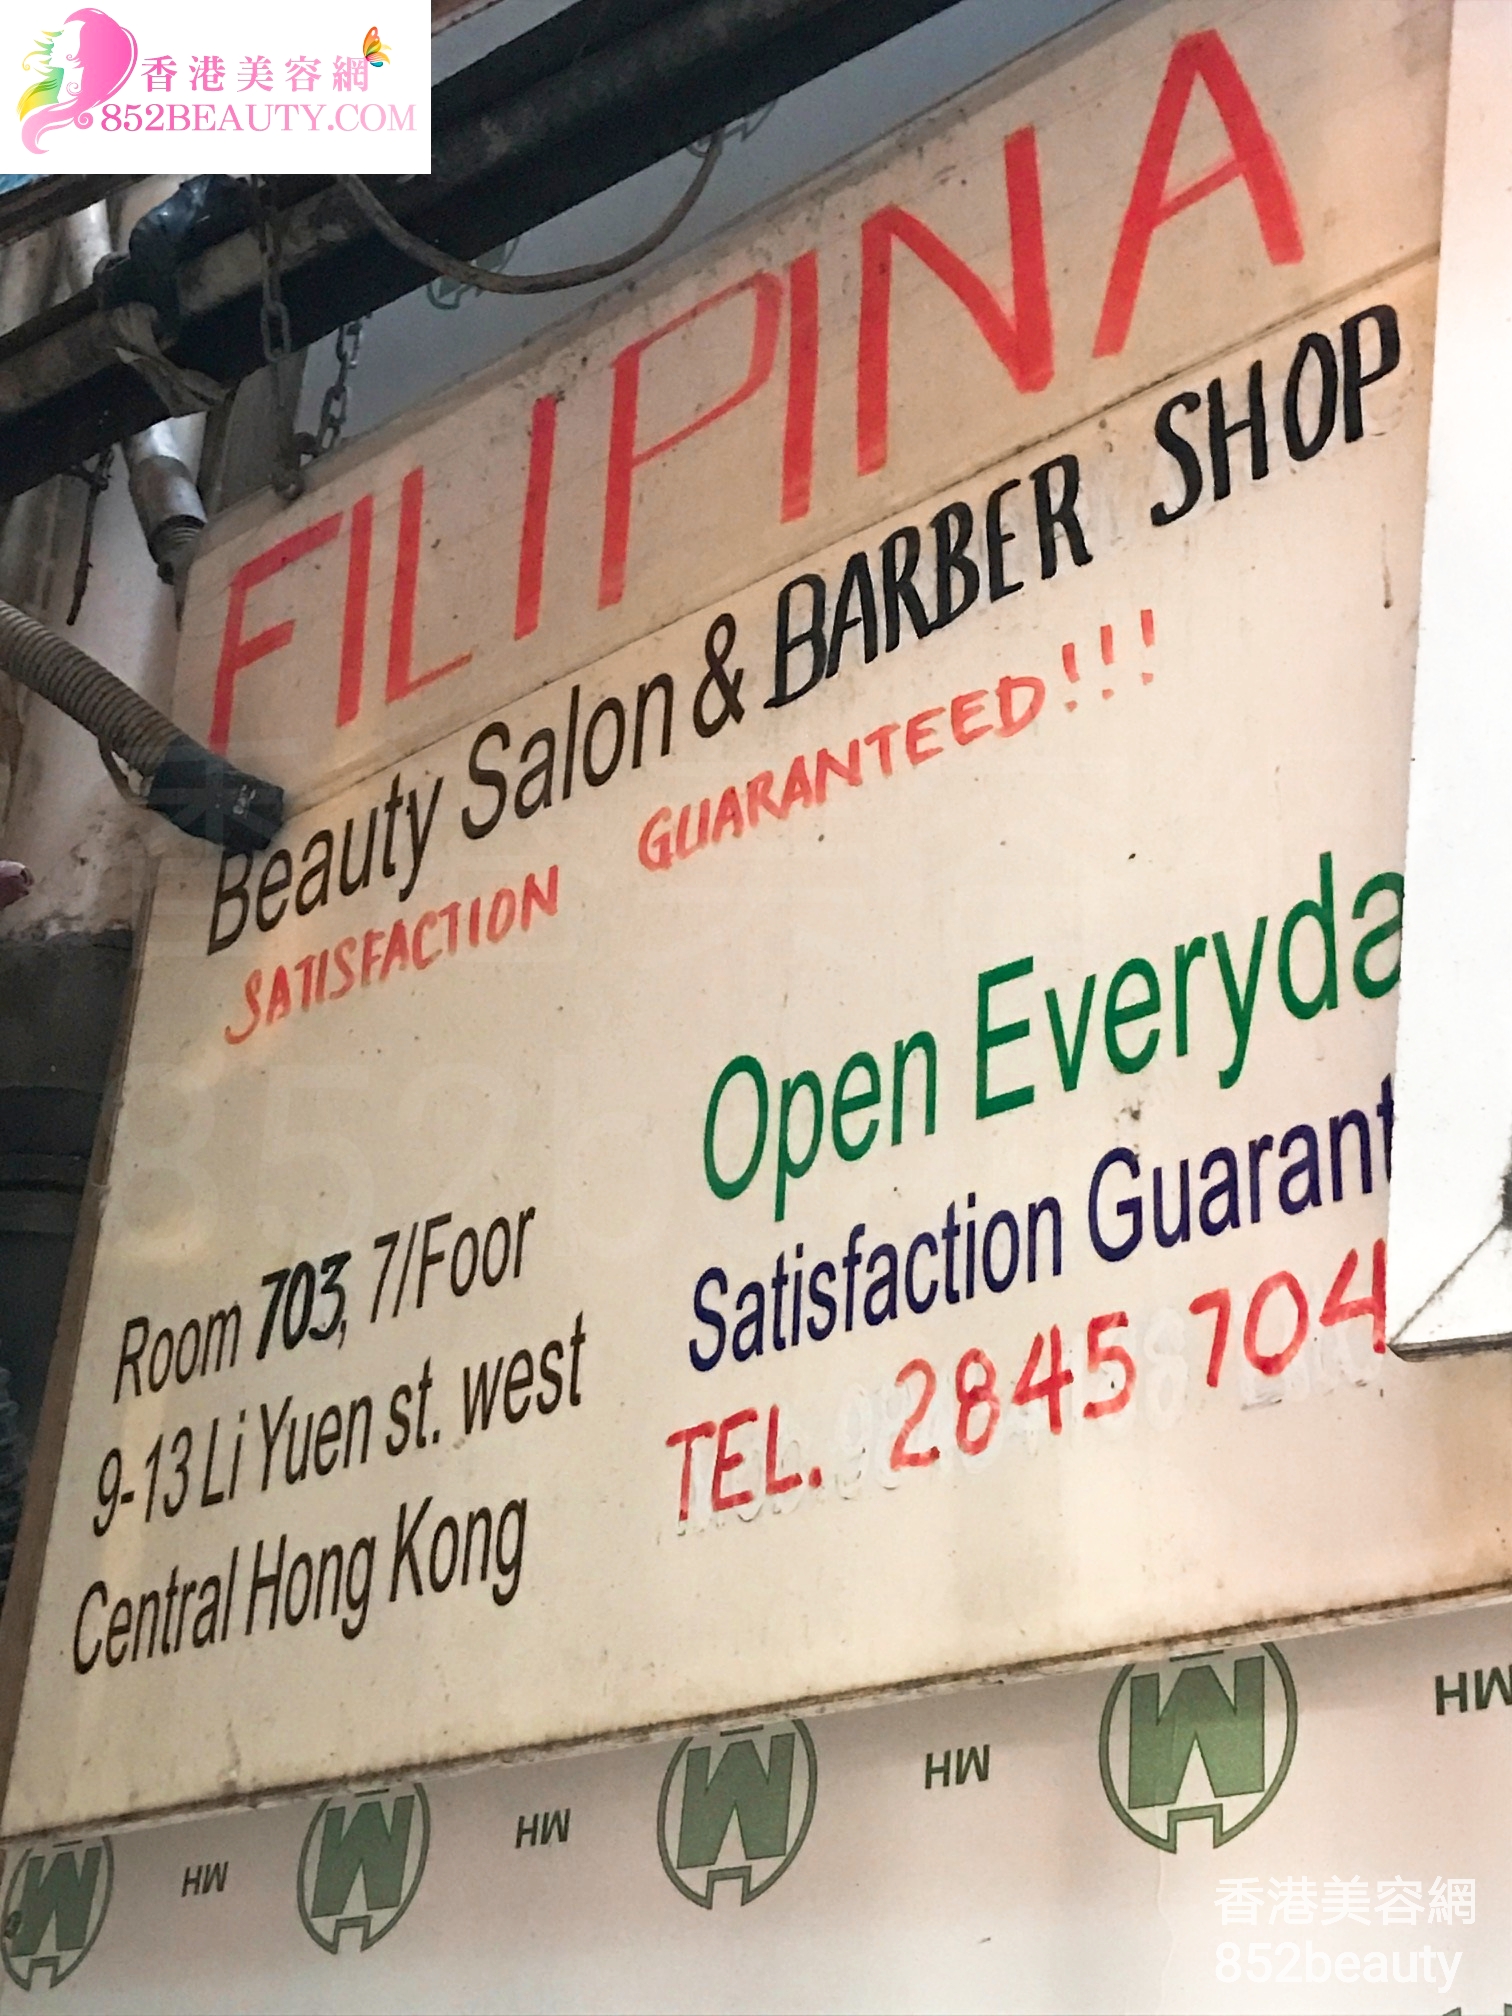 眼部護理: Filipna Beauty Salon